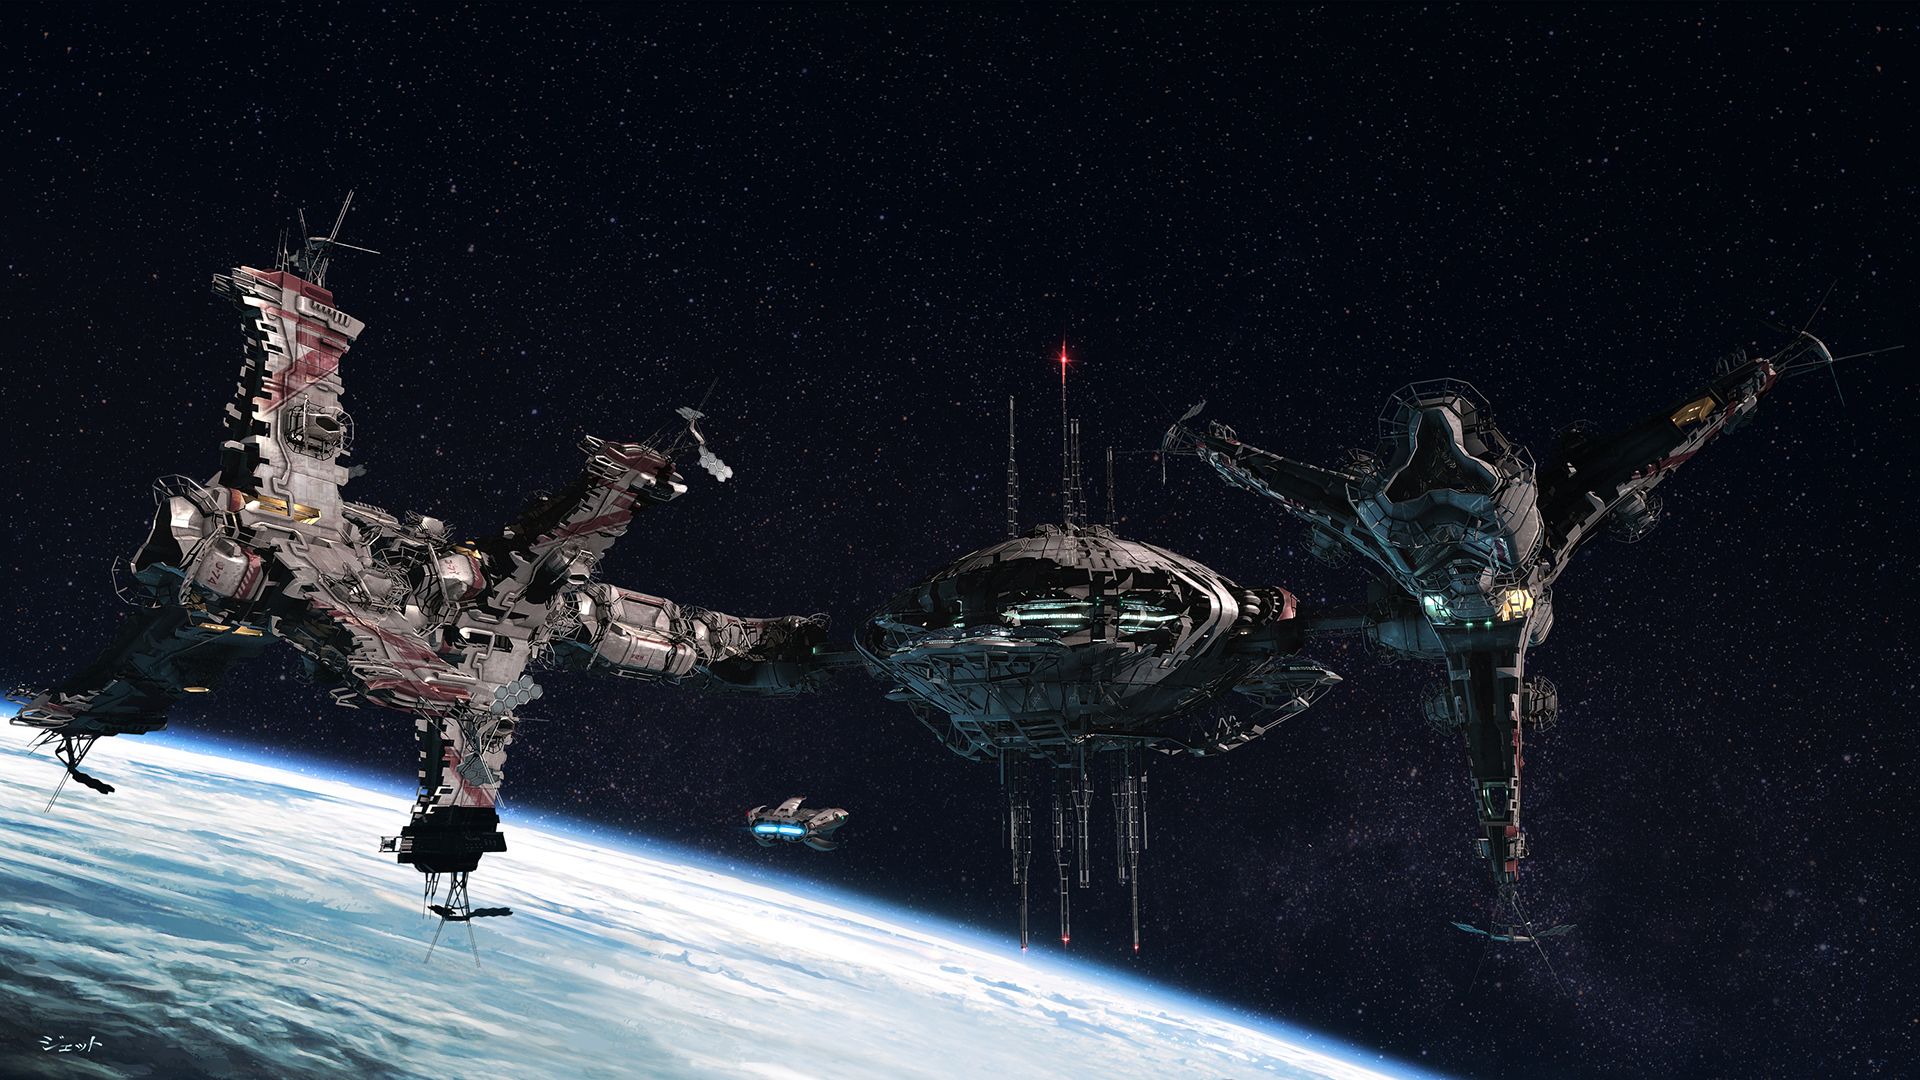 45 Battlestar Galactica HD Wallpapers | Backgrounds - Wallpaper Abyss